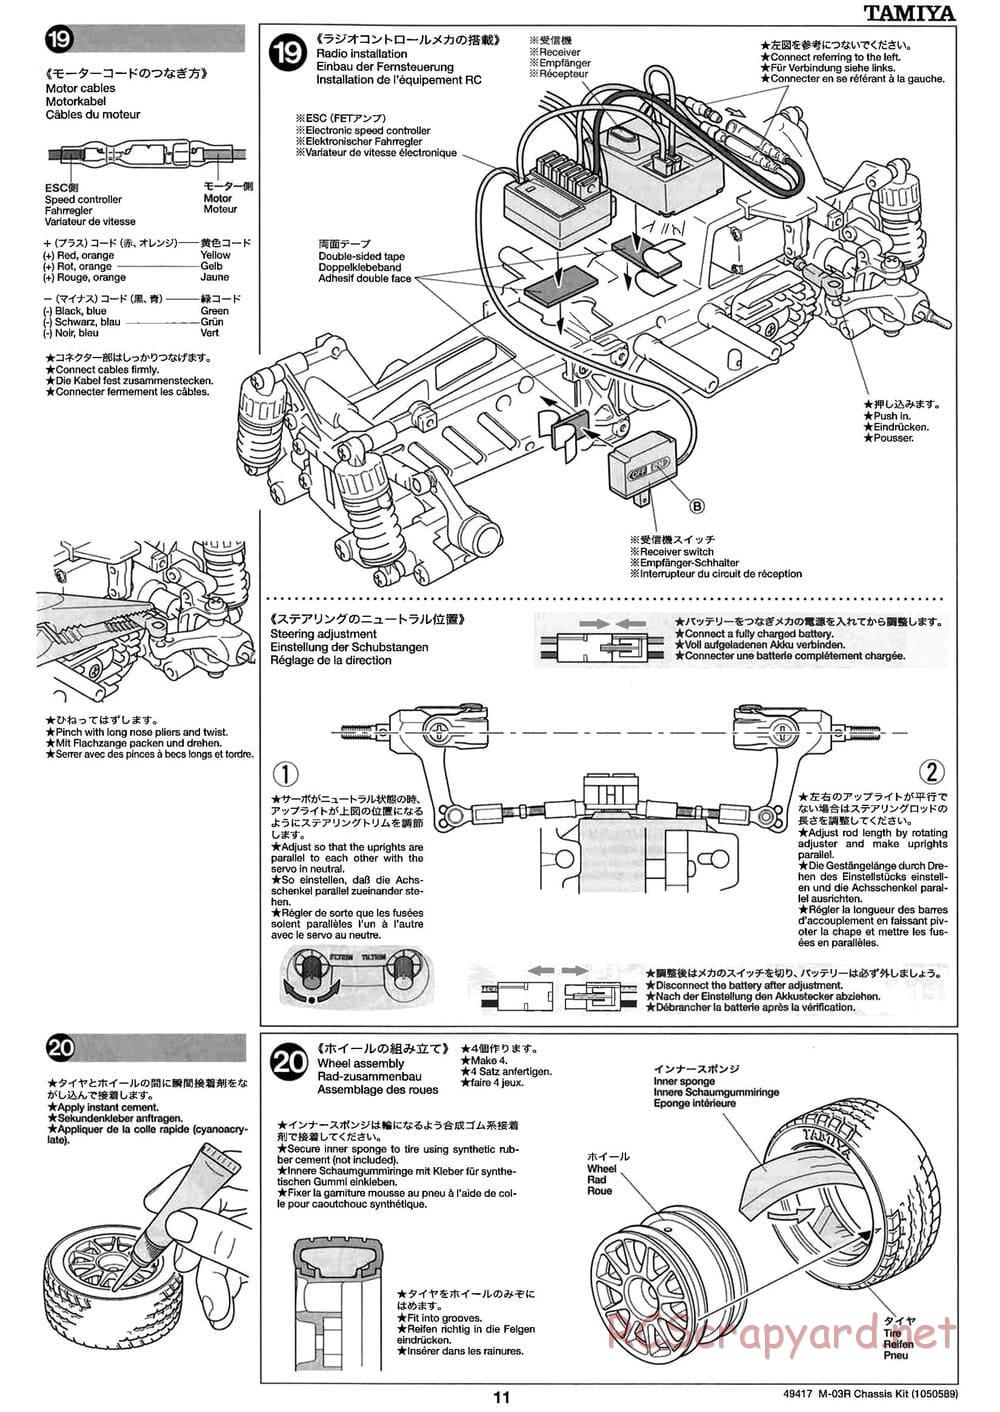 Tamiya - M-03R Chassis - Manual - Page 11